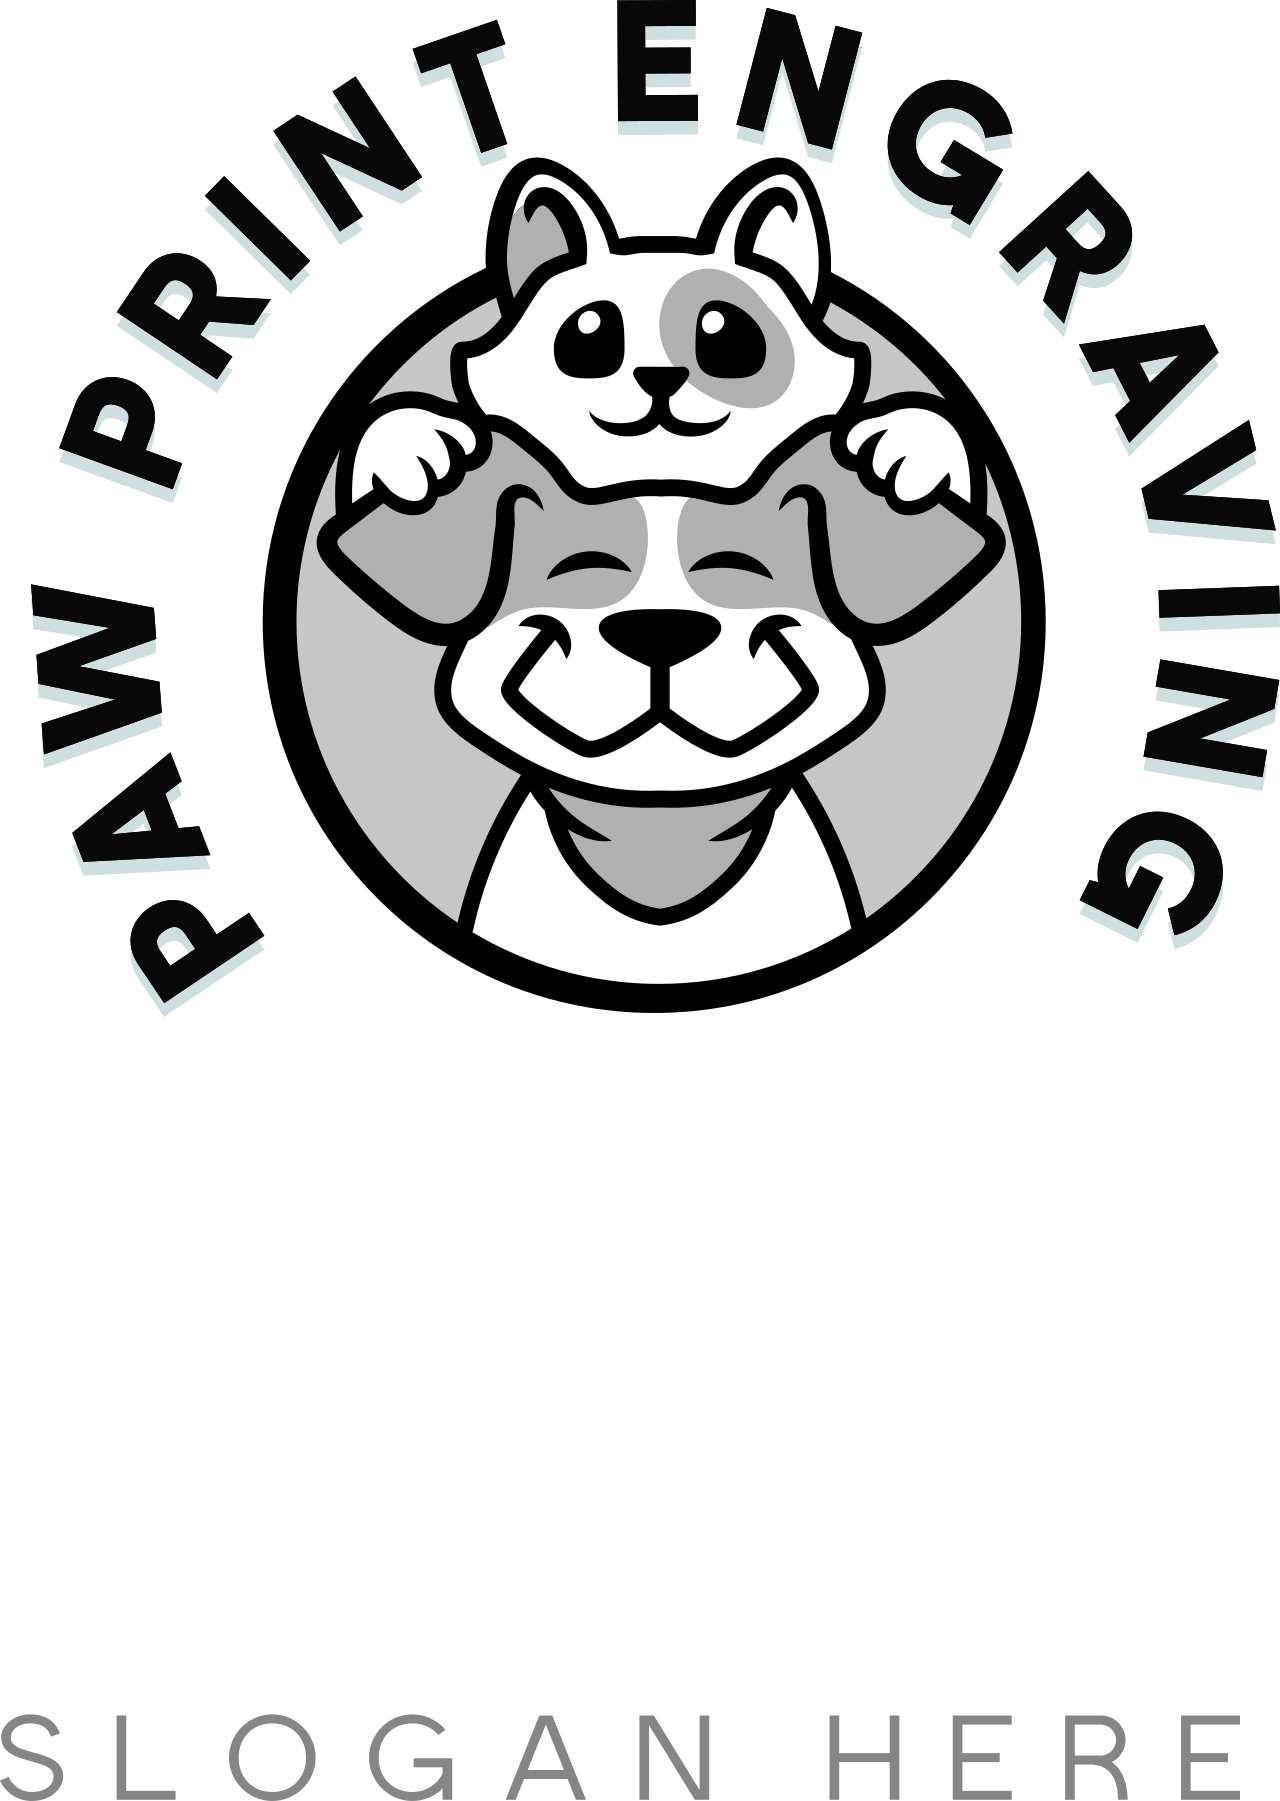 pawprintengraving's logo